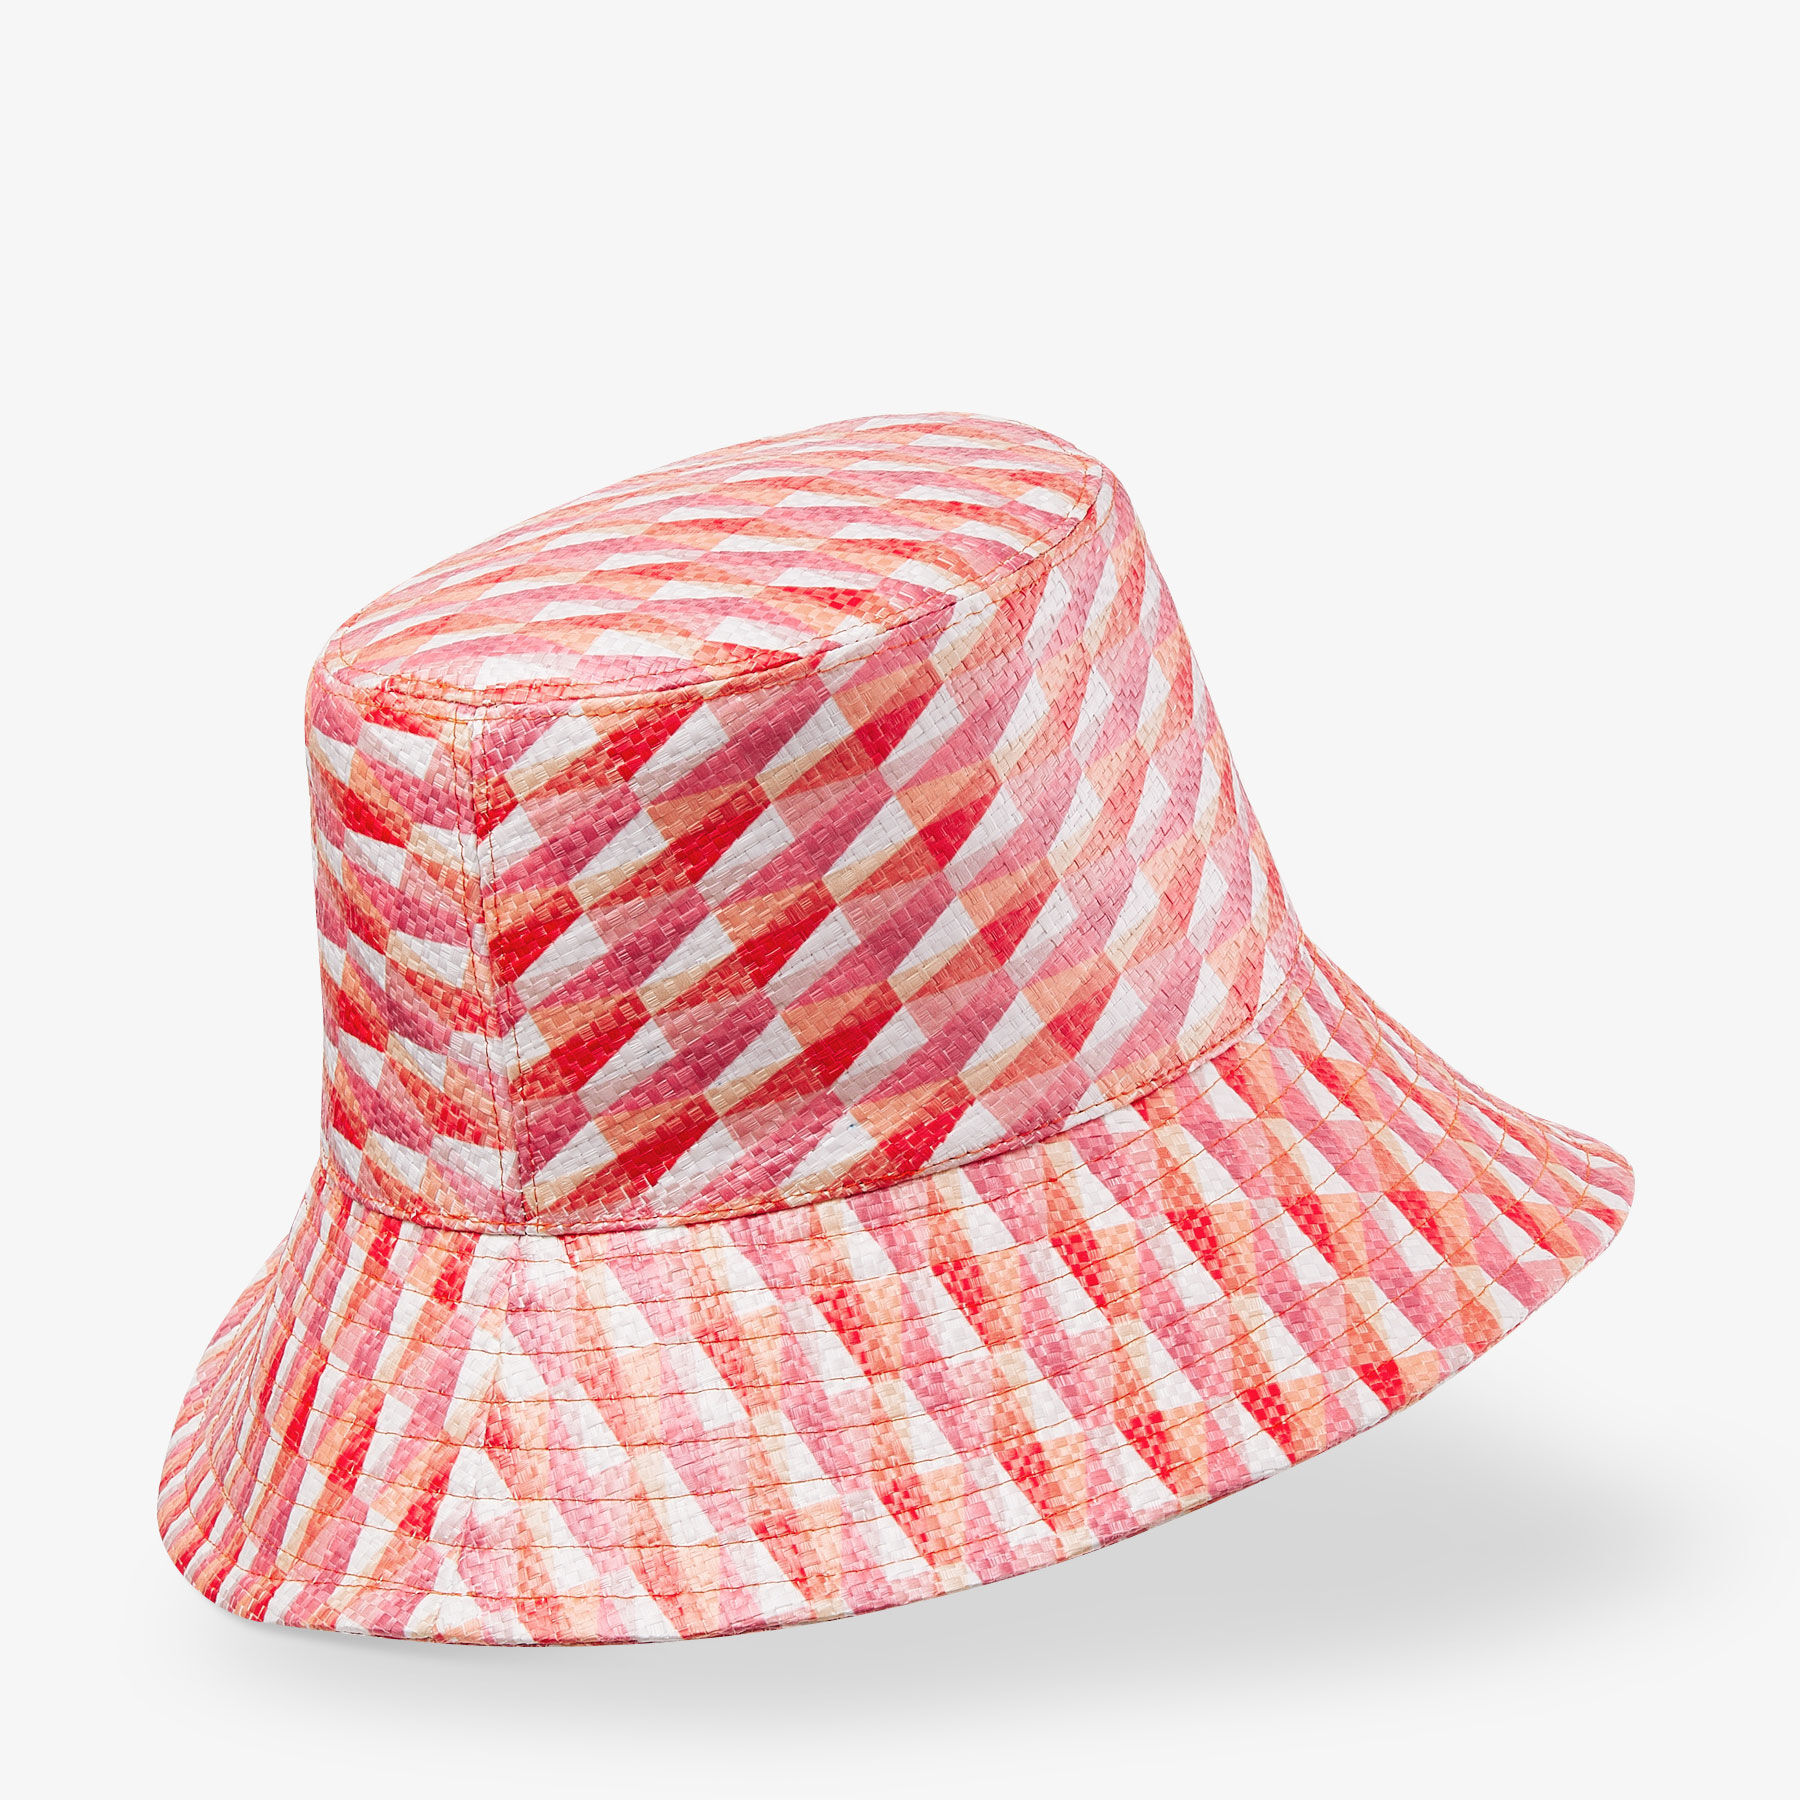 420 Bucket Hat -  Sweden